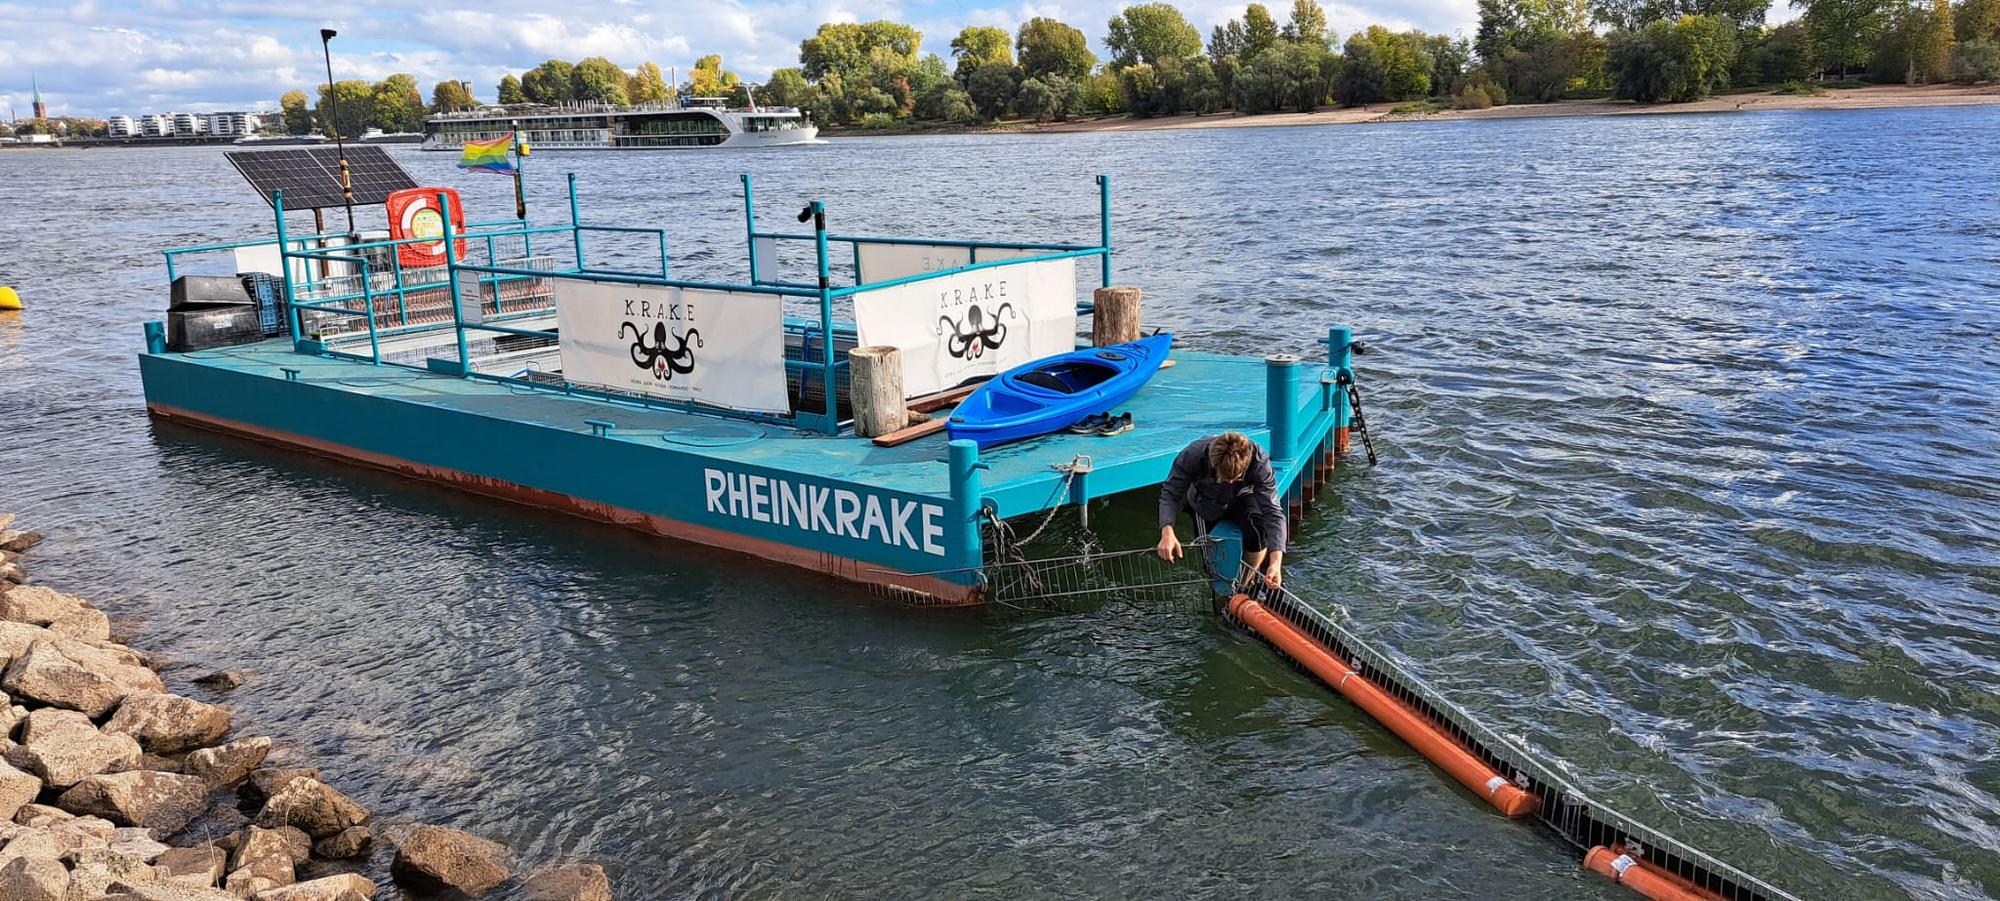 Ein blaues, schwimmendes Konstrukt im Rhein, auf dem "Rheinkrake" steht